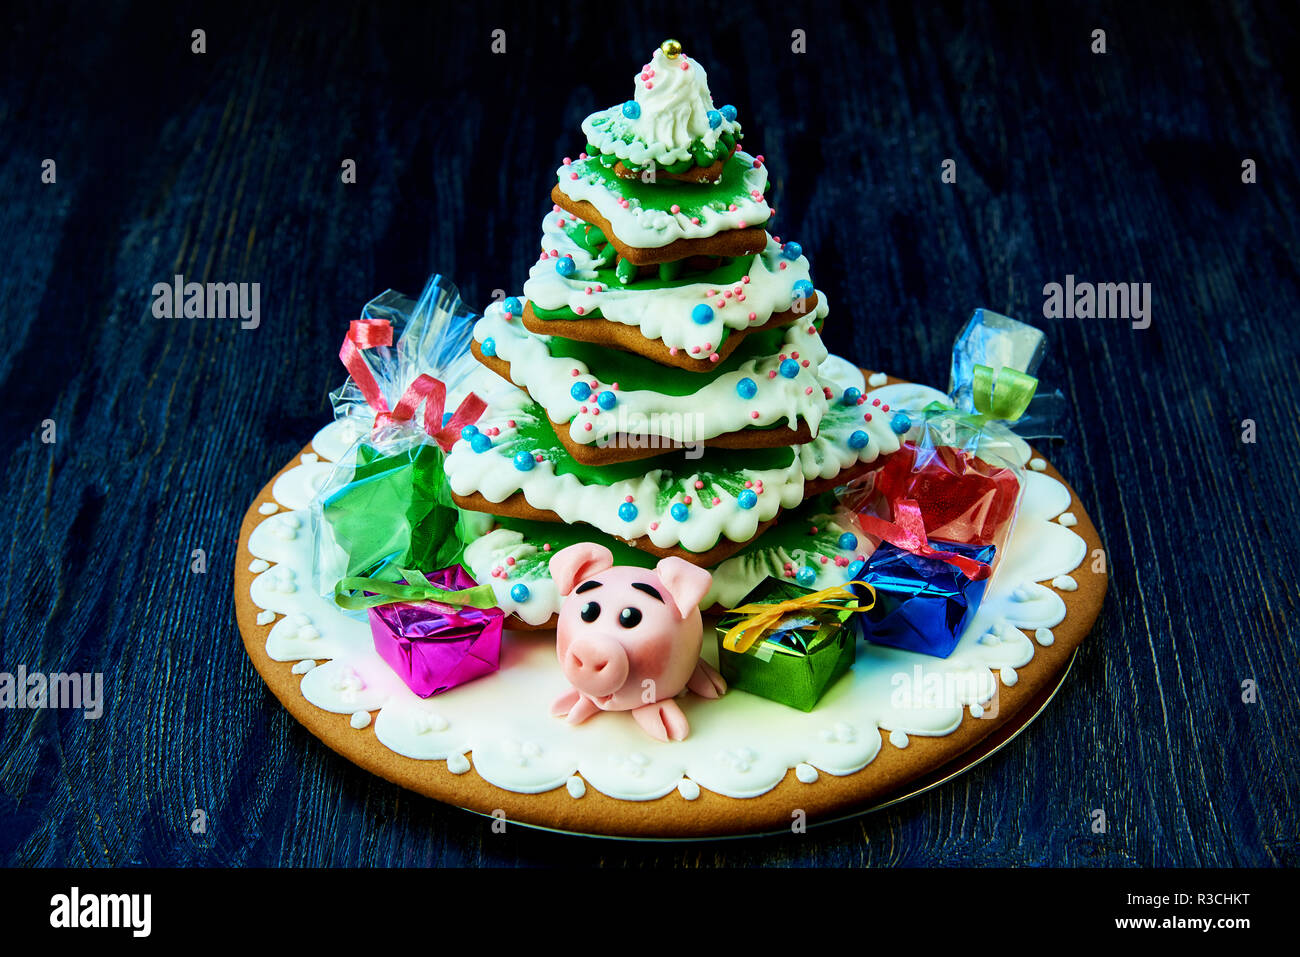 Weihnachten Lebkuchen, süßes Schwein mit Geschenken und Süßigkeiten im Paket  unter dem Weihnachtsbaum auf einem dunklen Hintergrund Stockfotografie -  Alamy